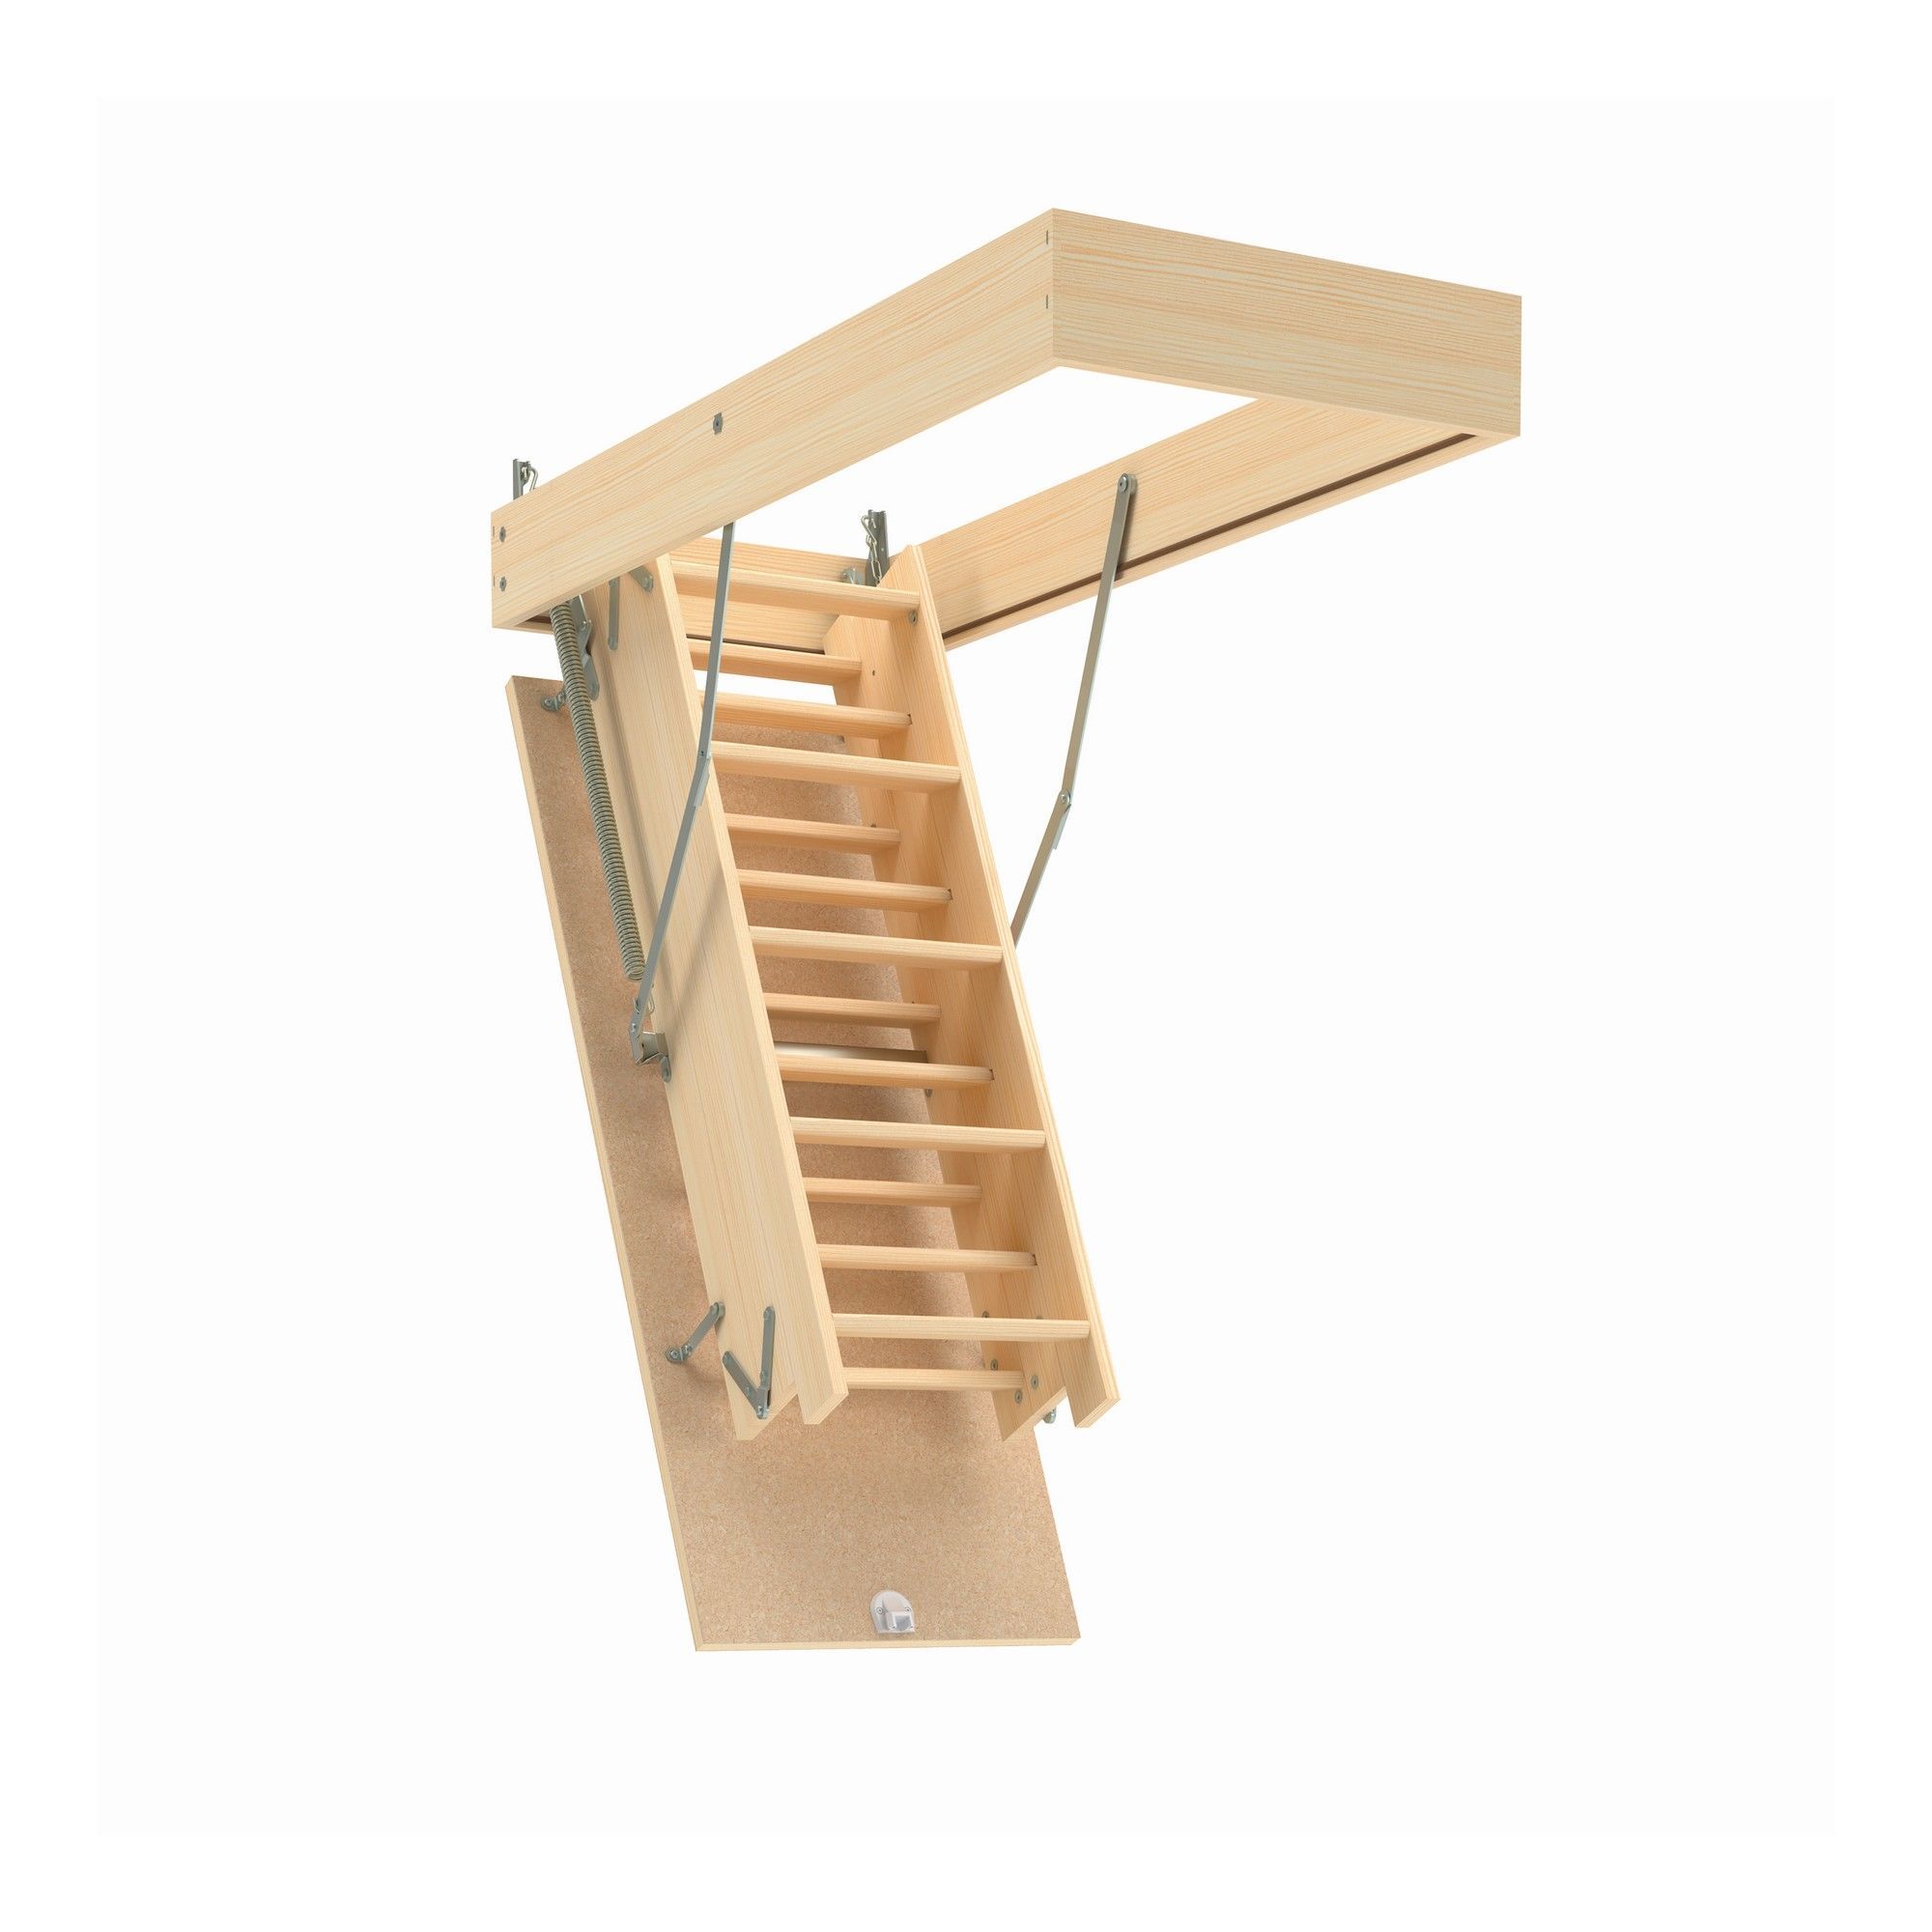 Attic Ladder - LWB - Wood - 22 x 54